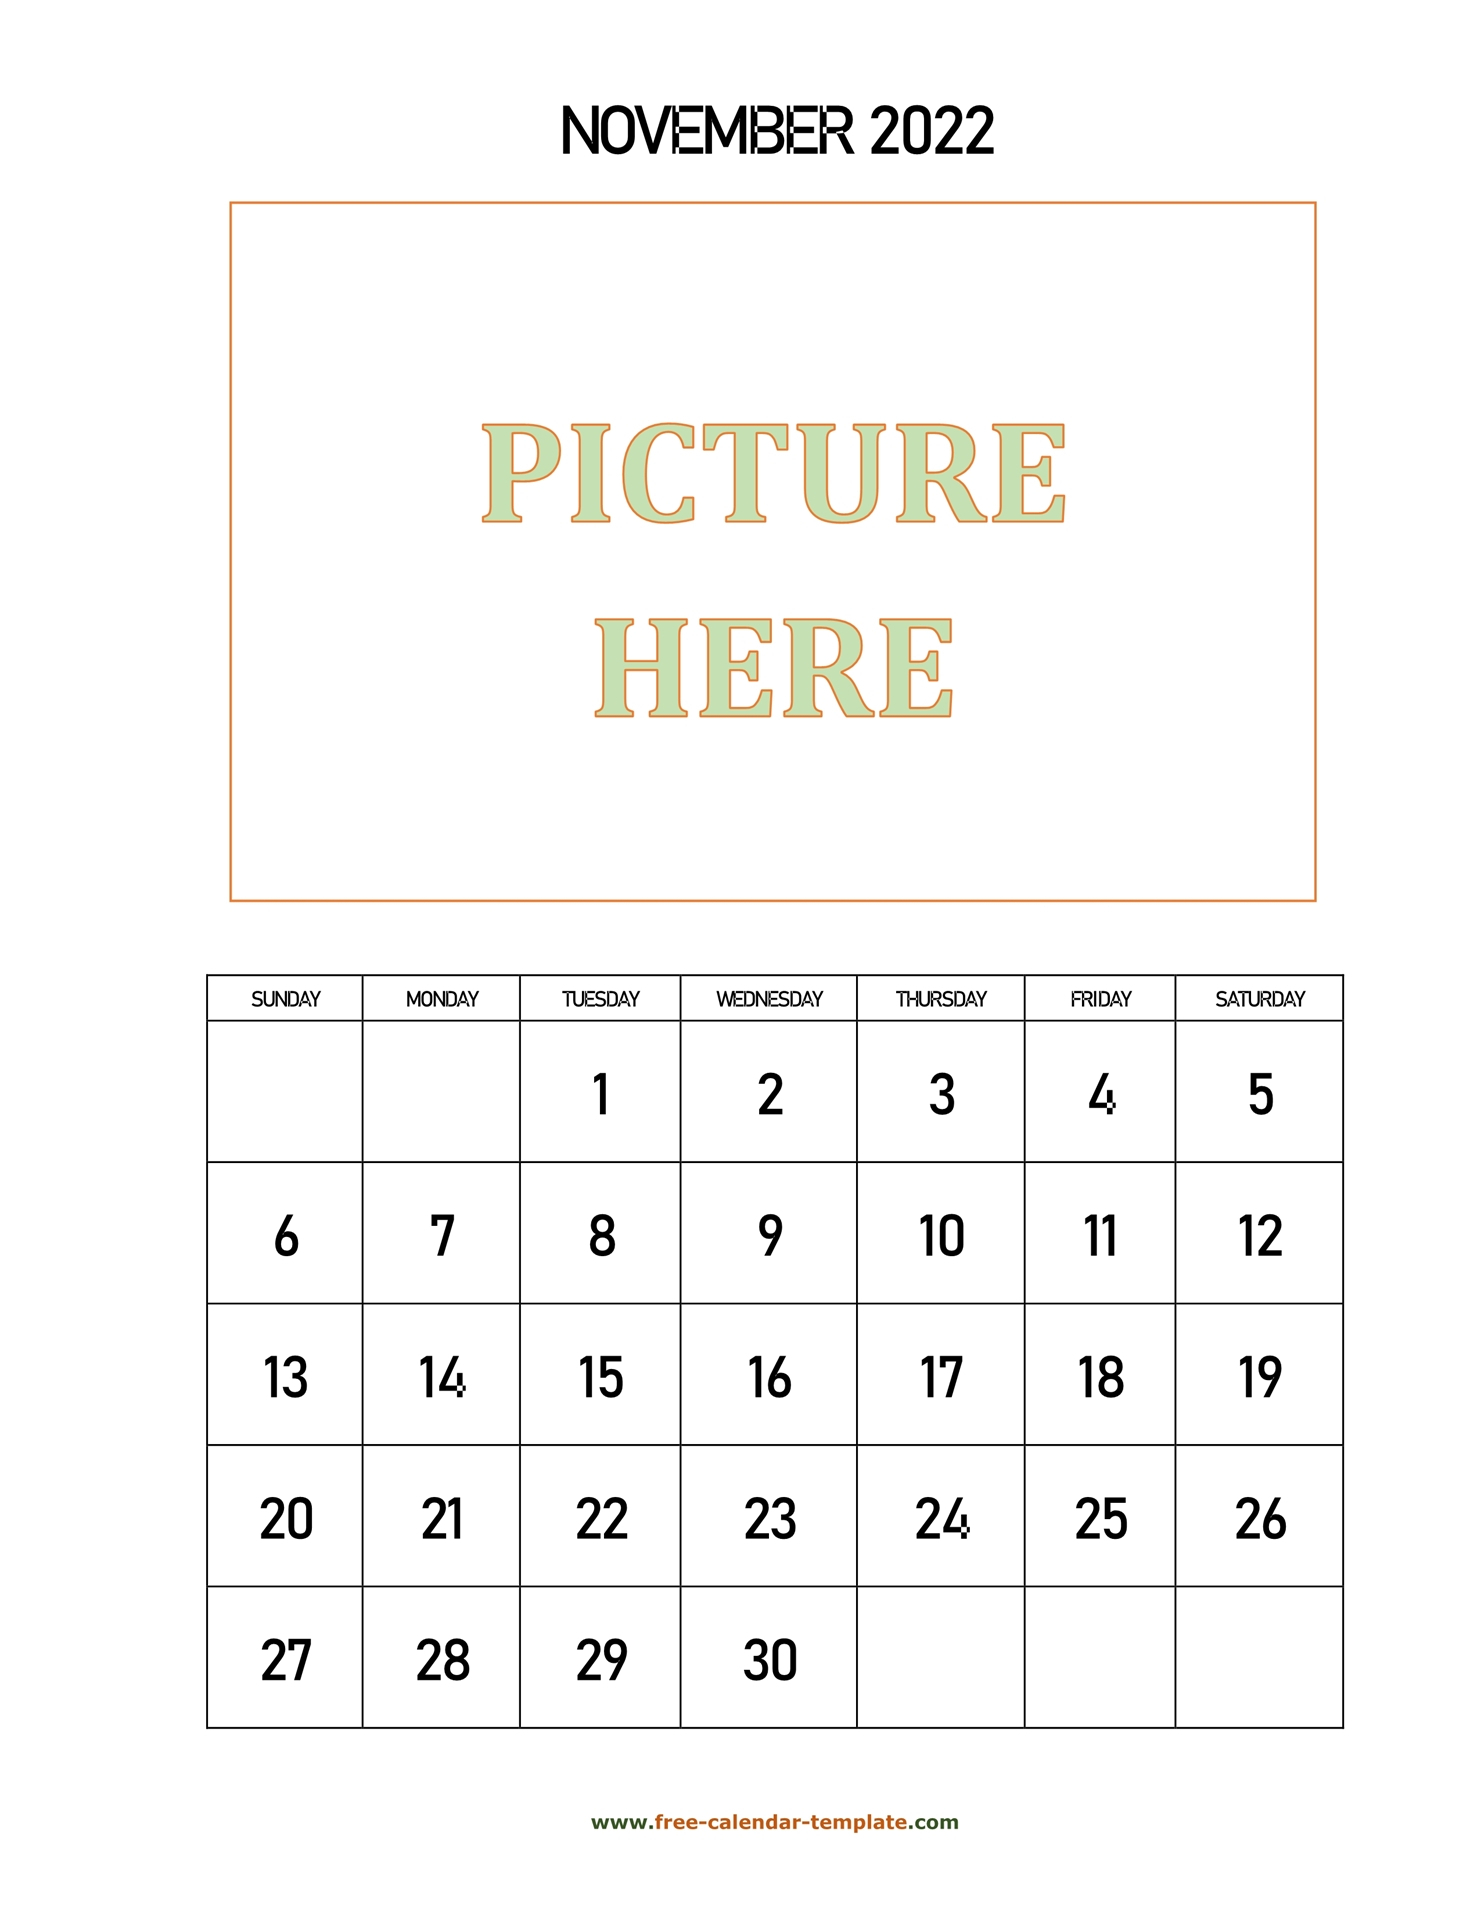 Collect November 2022 Calendar Printable Free